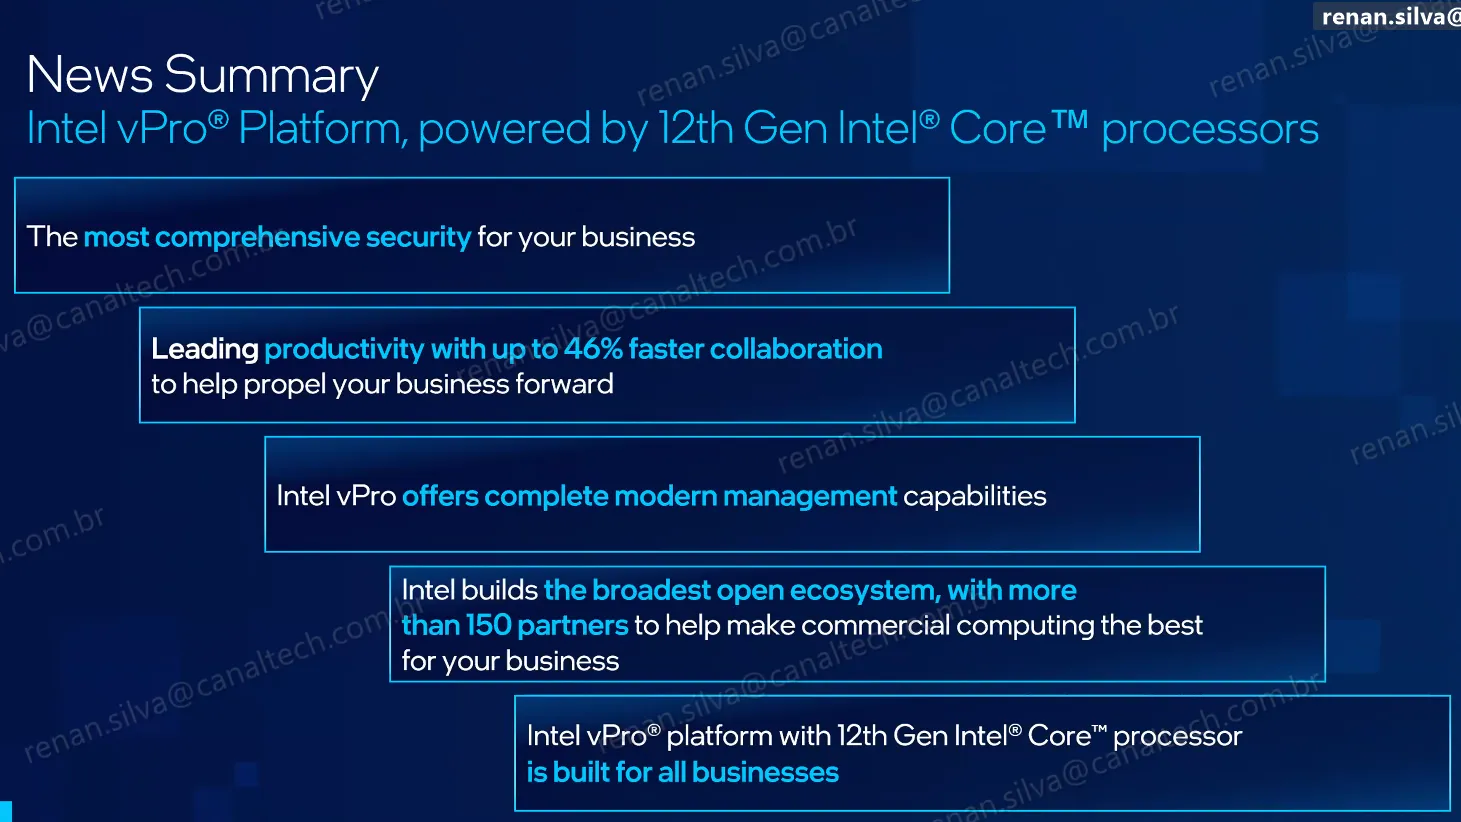 A Intel garante ainda maior facilidade de gerenciamento, incluindo transição sutil do Windows 10 para o Windows 11, e melhor colaboração entre funcionários diante do cenário de home office e trabalho híbrido (Imagem: Intel)